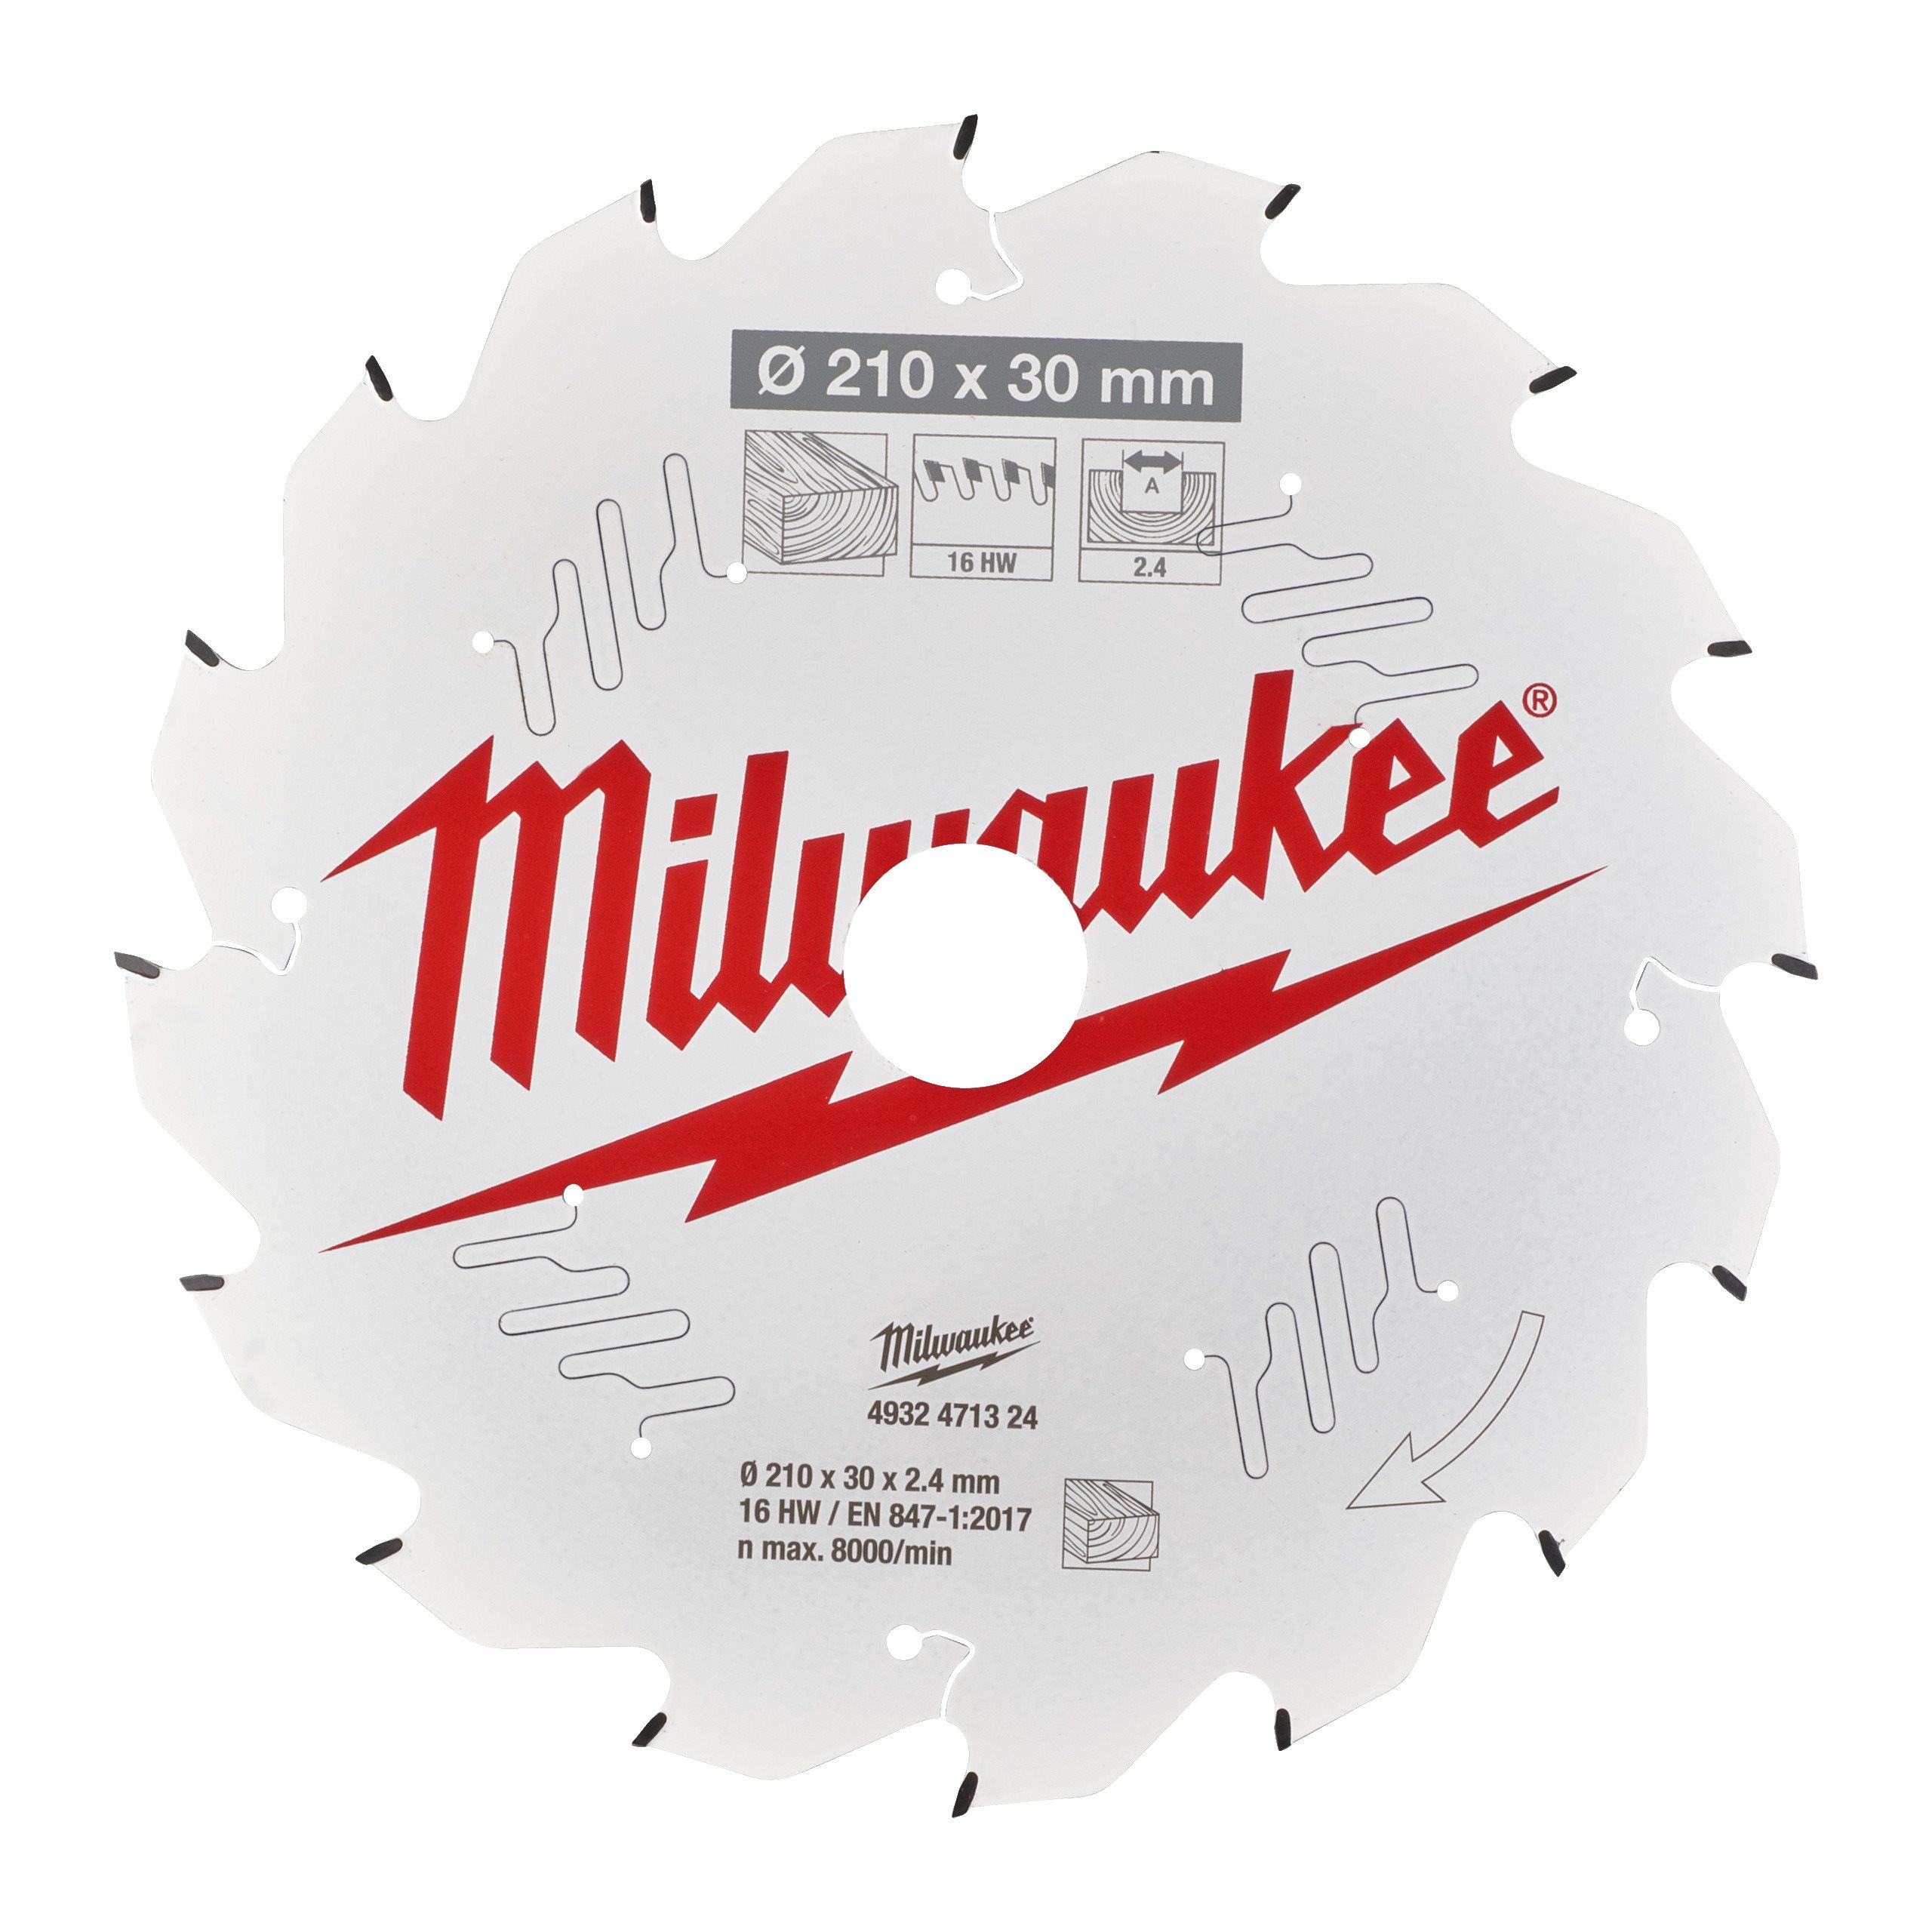 Milwaukee   Lame de scie circulaire pour menuiserie 165 mm x 15,8 mm 40 dents